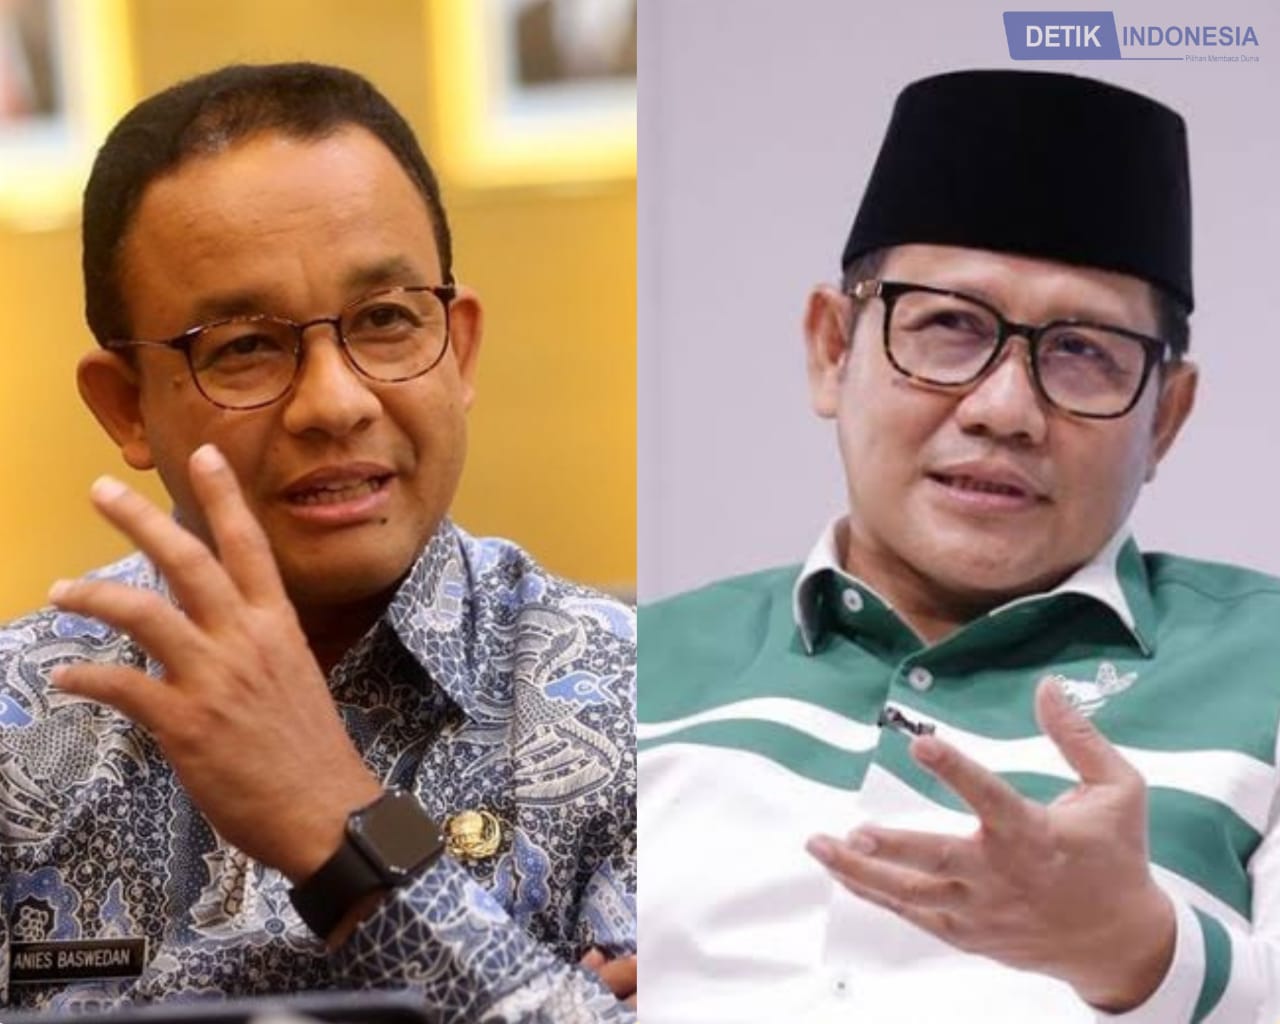 Kolase foto Anies Baswedan dan Ketua Umum PKB Muhaimin Iskandar alias Cak Imin  (Dok. Detik Indonesia)